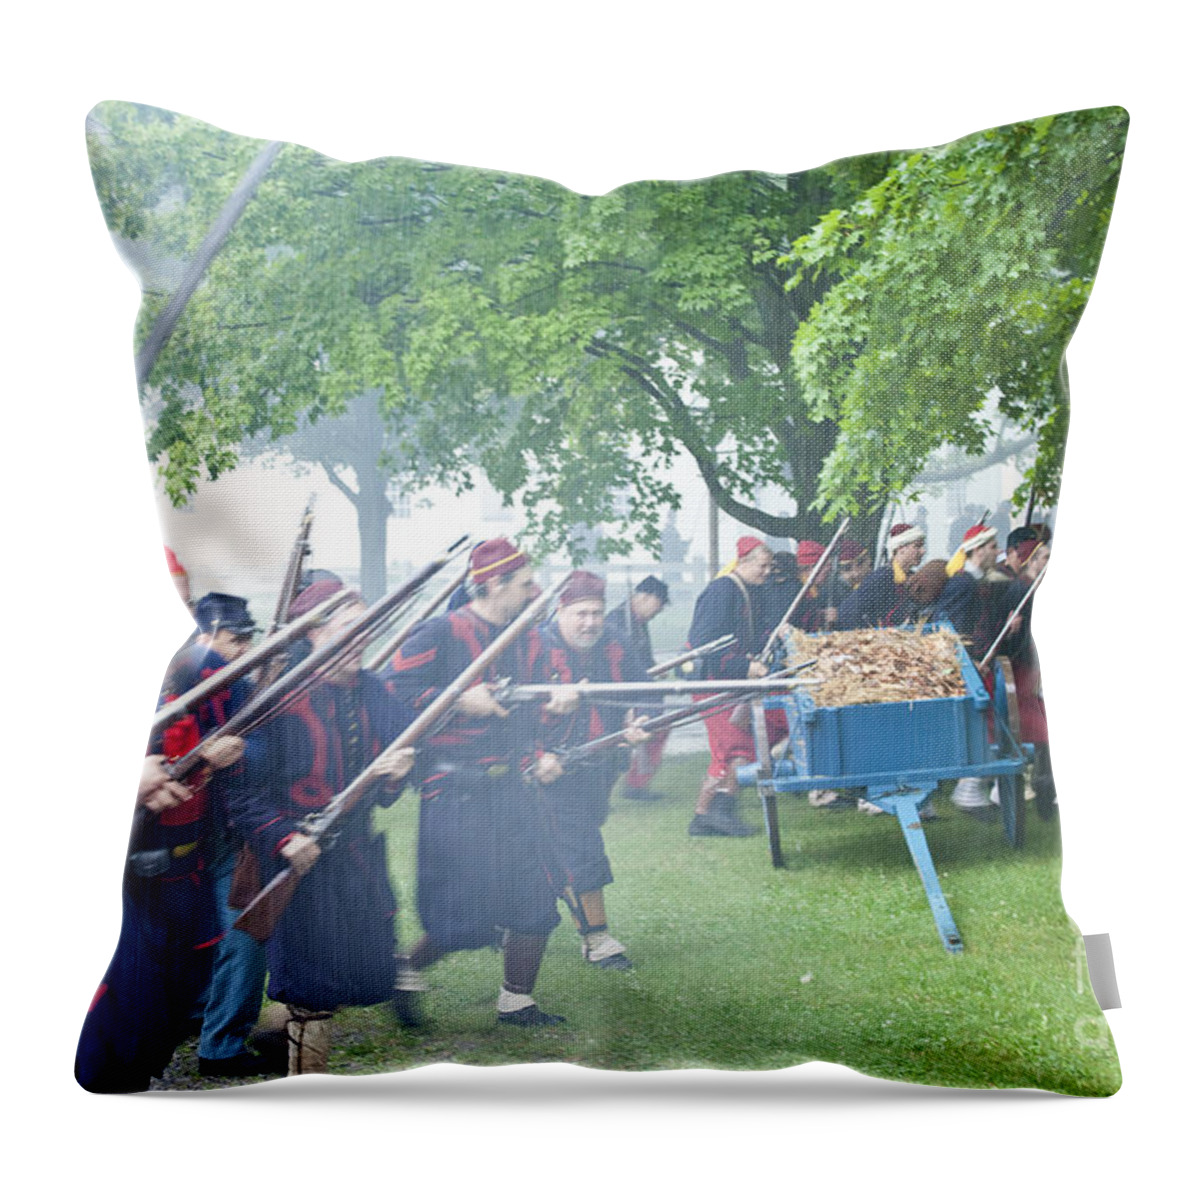 Civil War Throw Pillow featuring the photograph Civil War Reenactment 2 by Tom Doud